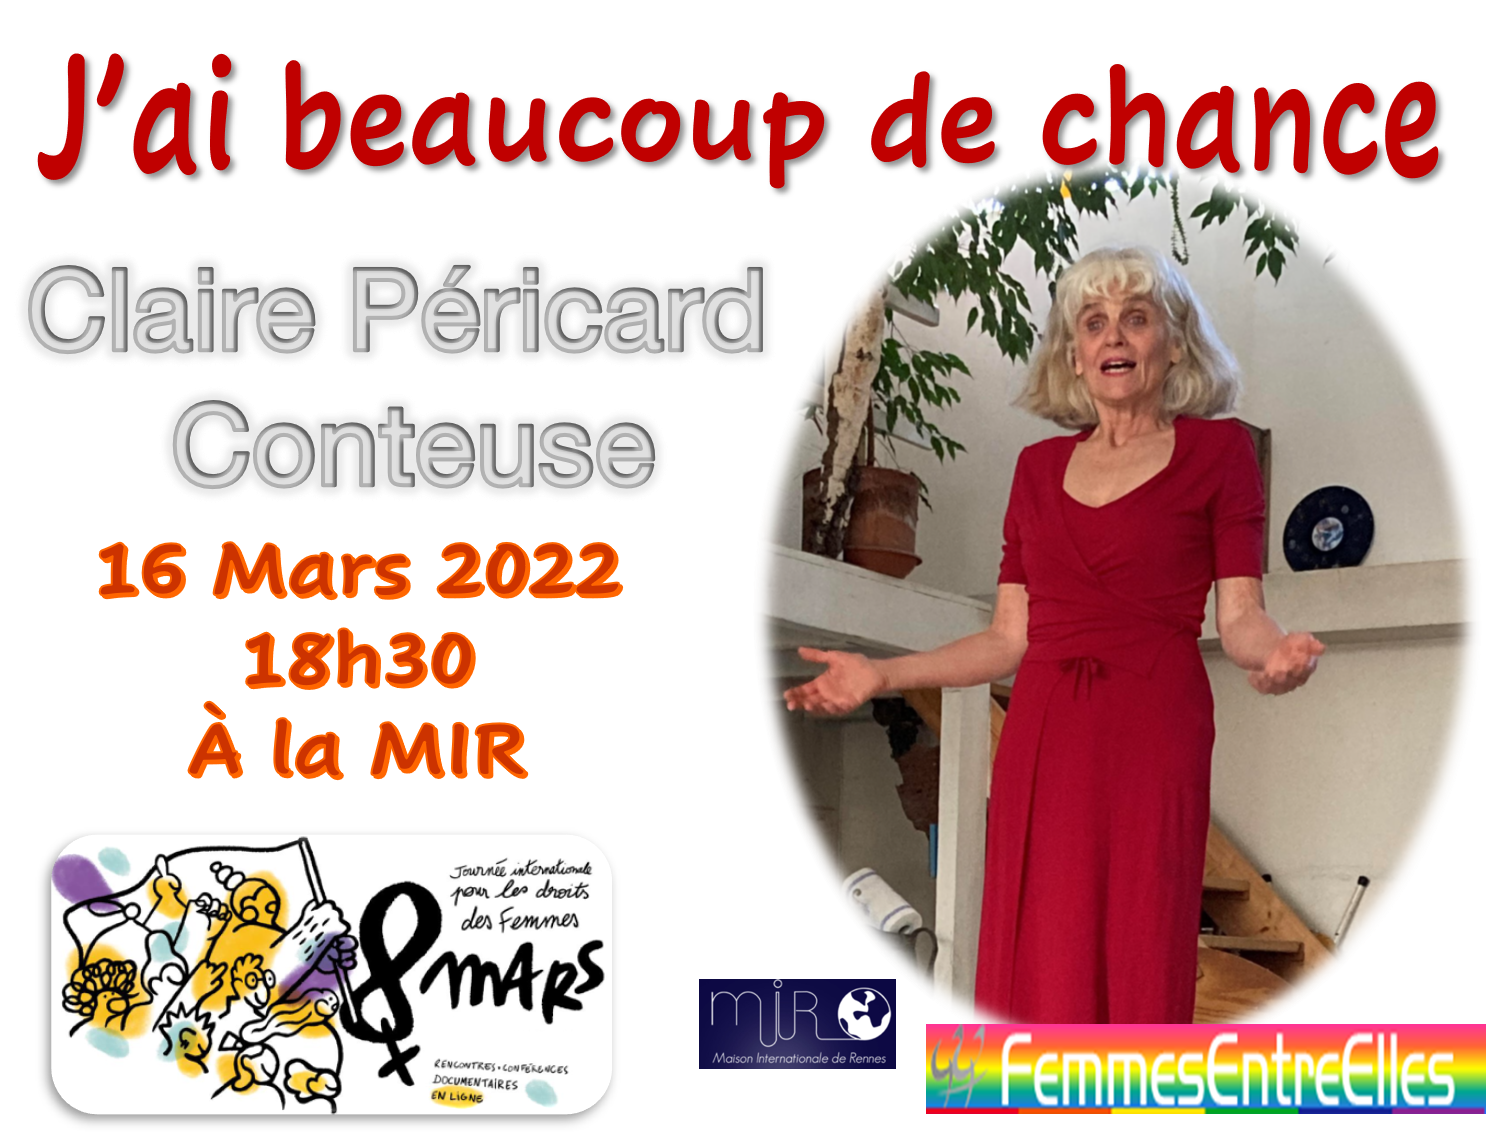 Journées du 8 Mars, "J'ai beaucoup de chance" avec Claire Péricard, 16 Mars 2022